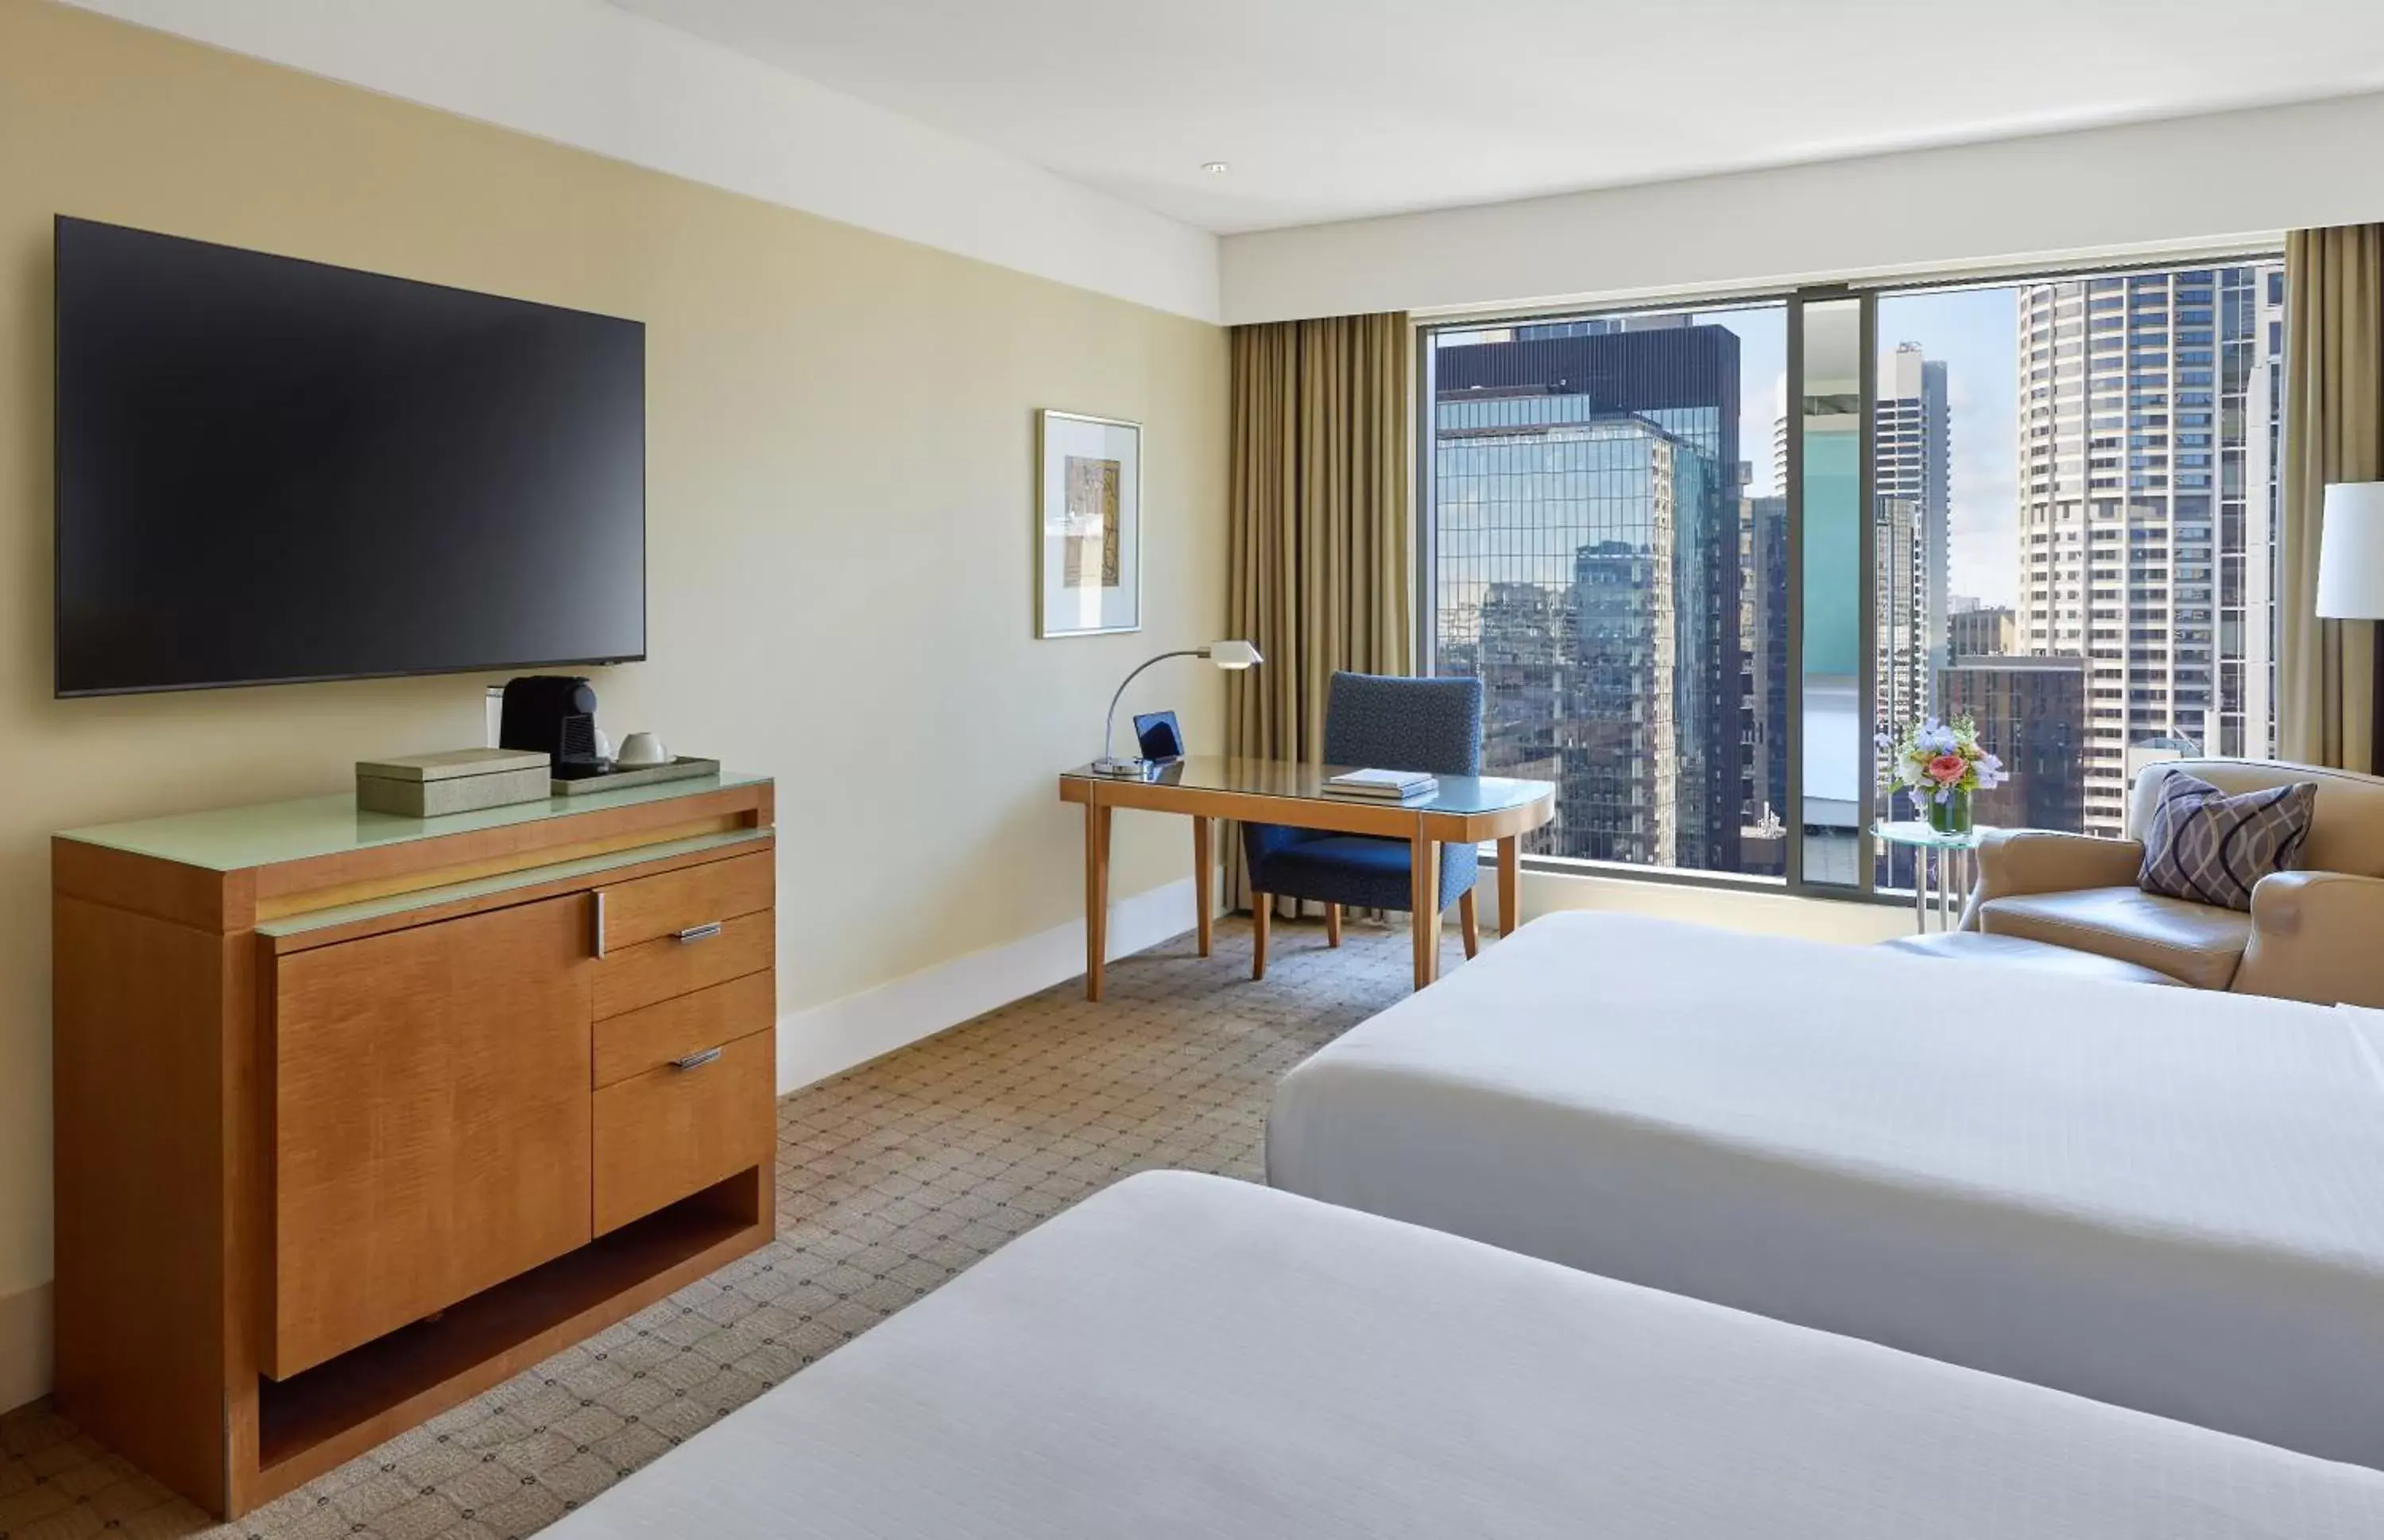 Bedroom, TV/Entertainment Center in The Fullerton Hotel Sydney